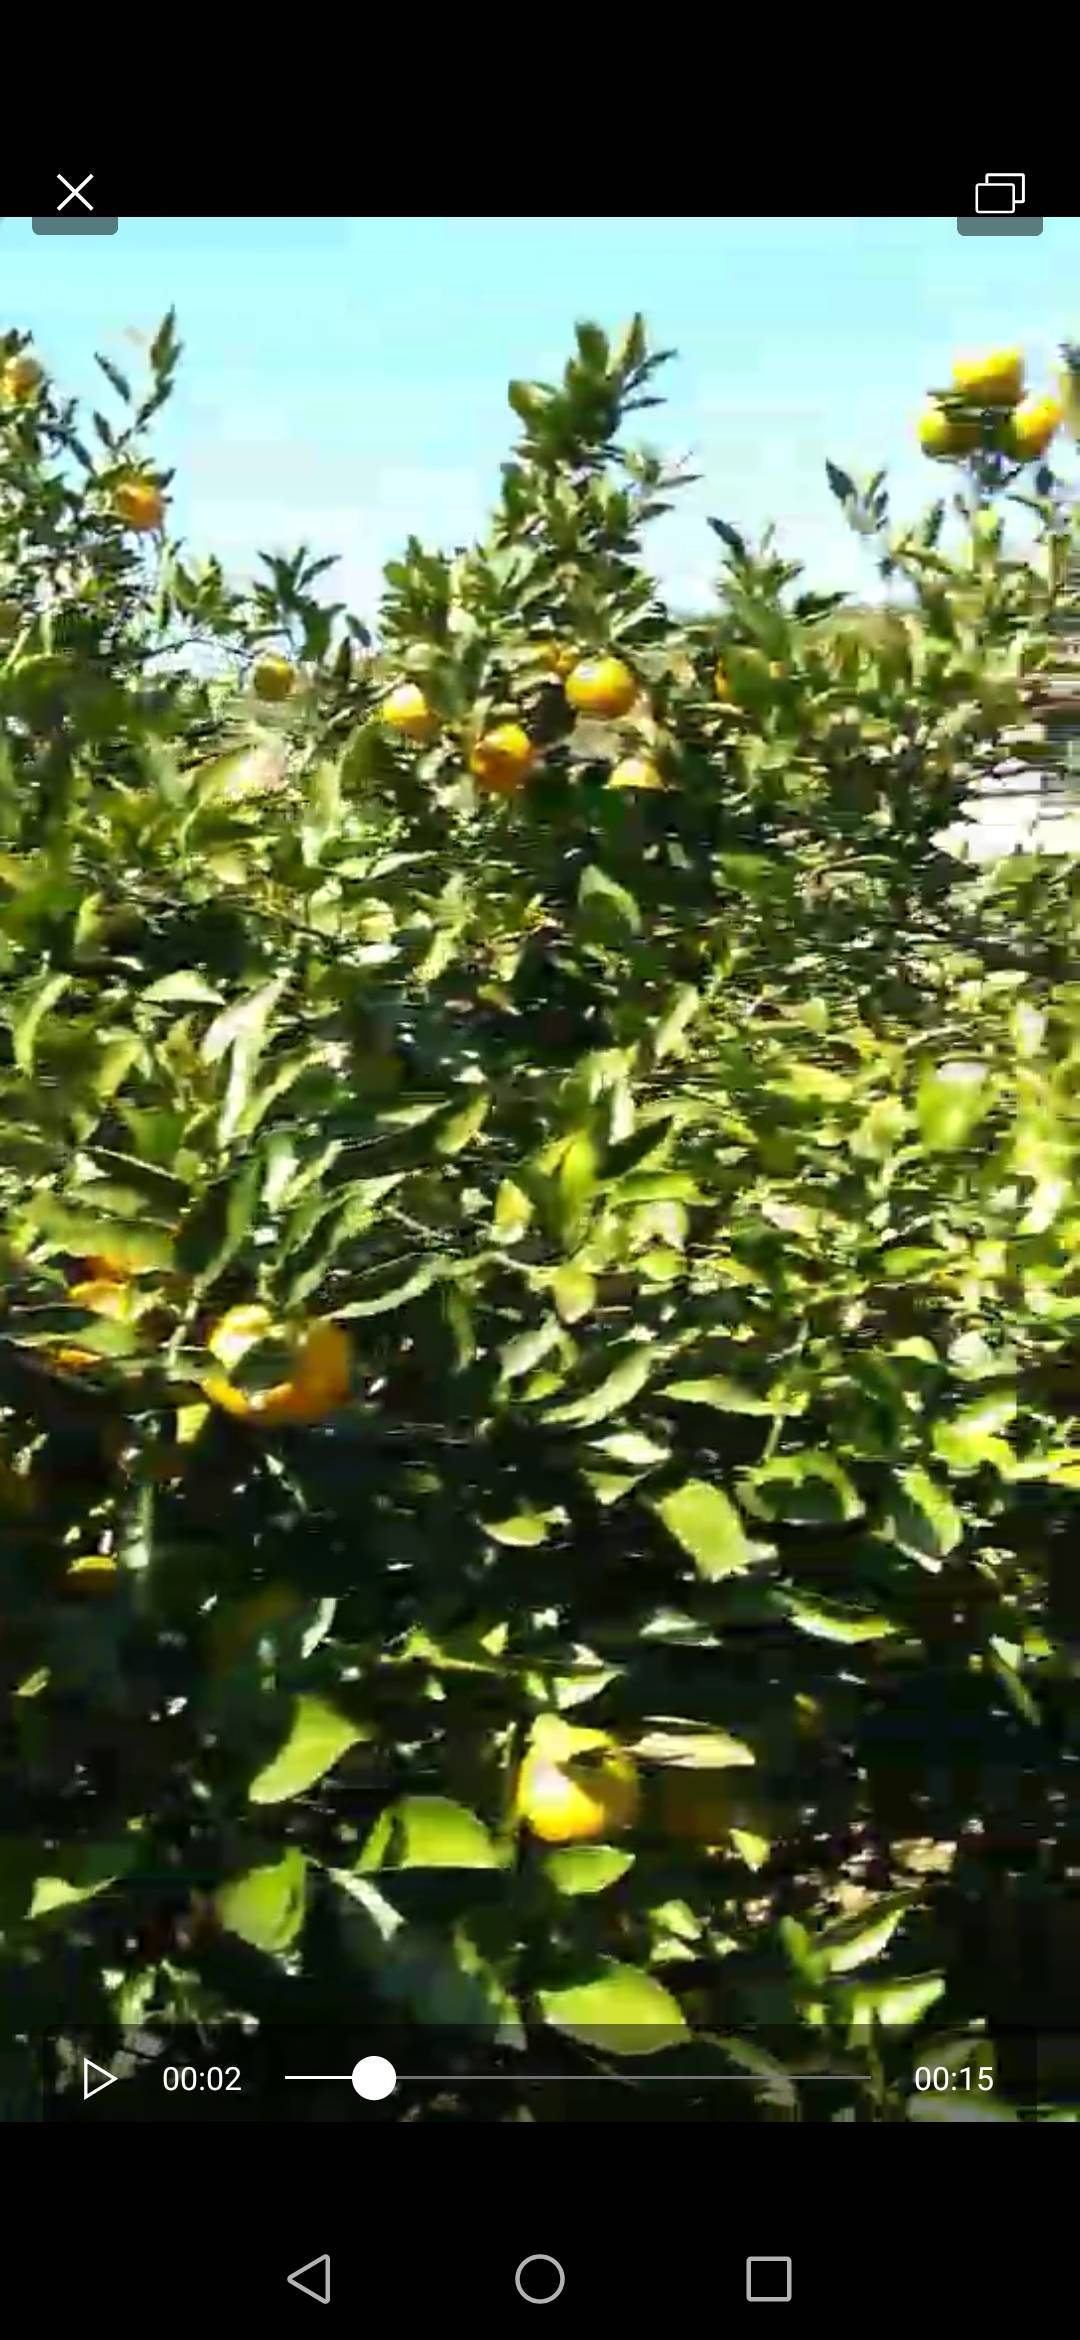 自家桔林出售石门柑橘，碰柑，橙子，柚子。味道回味无穷。（17873911155）微信同号，